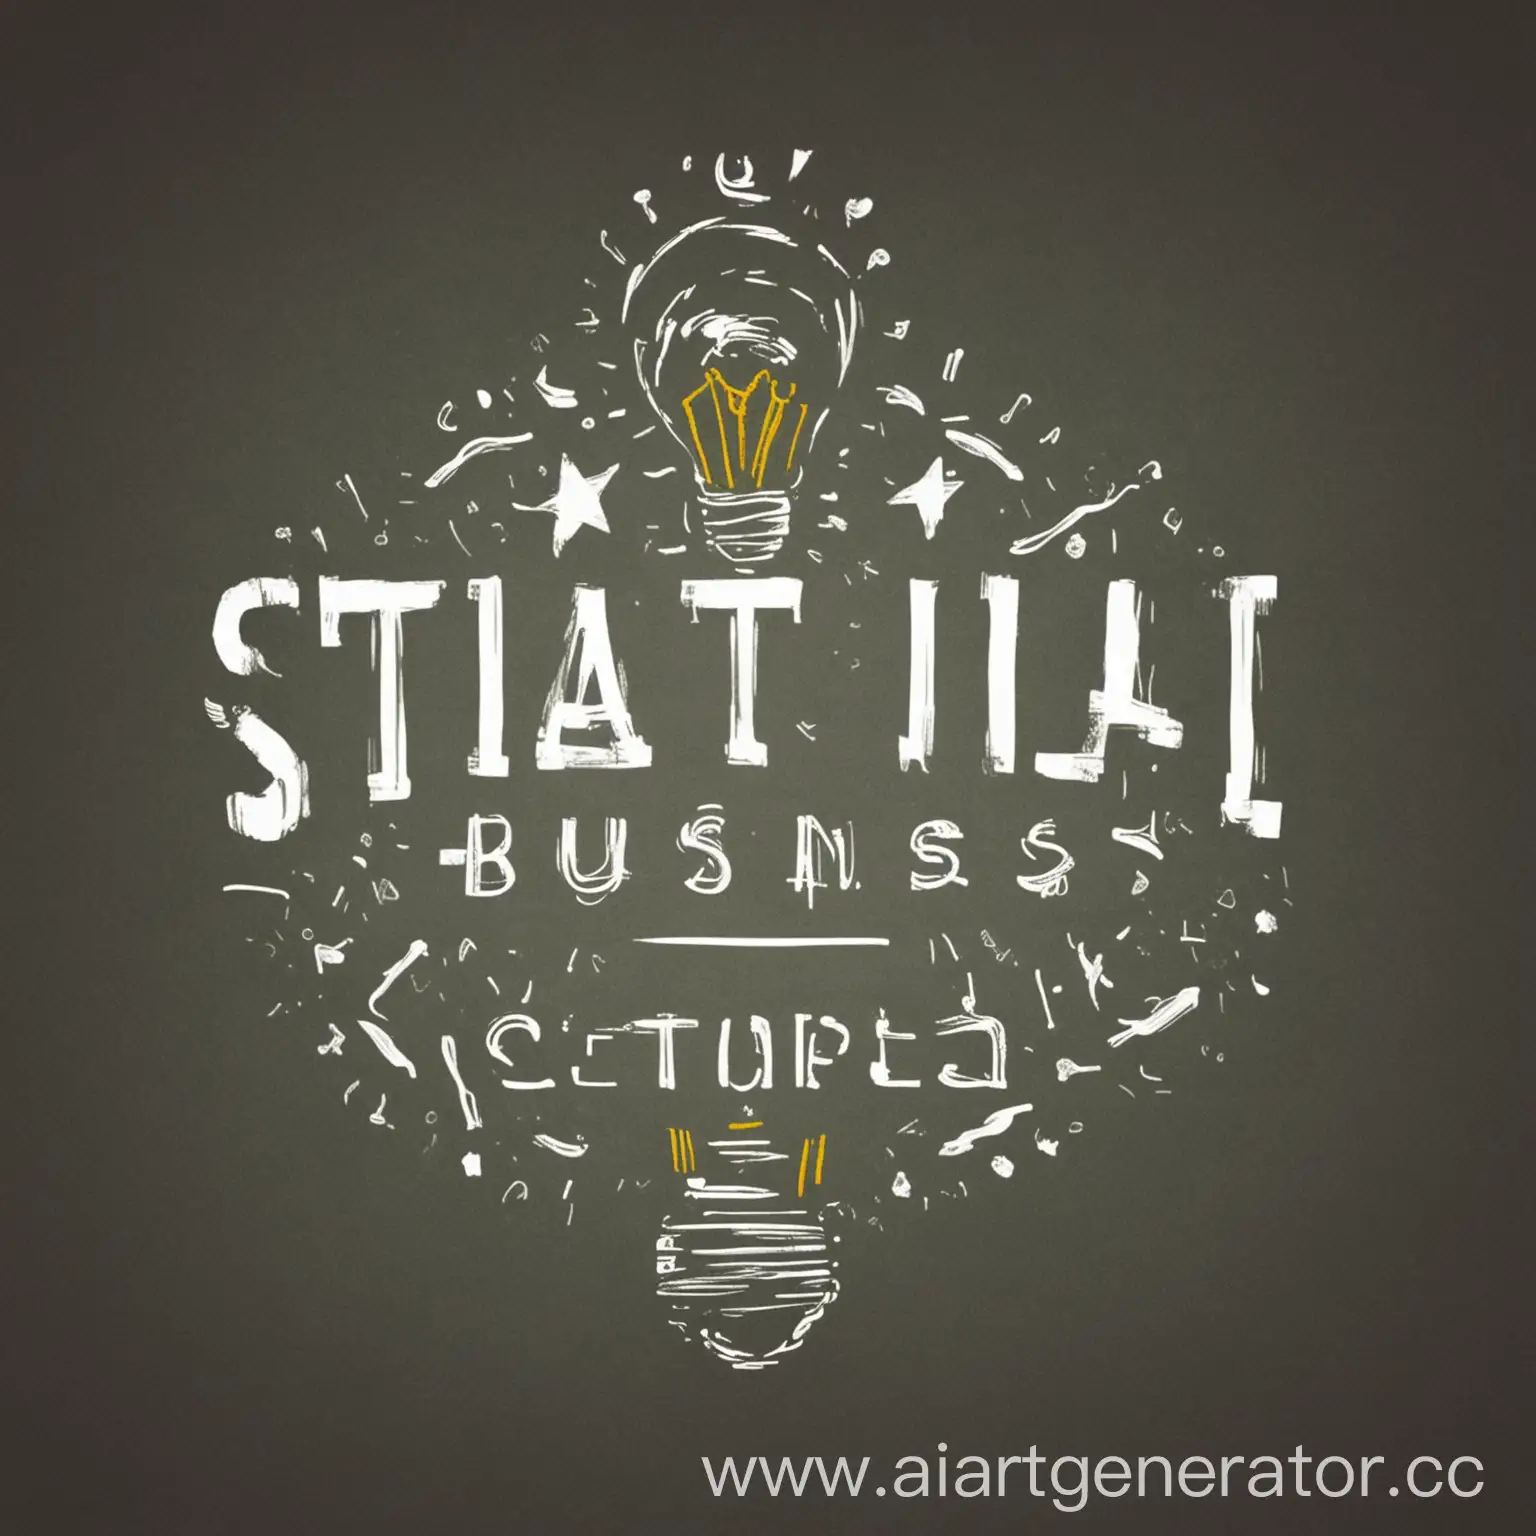 СтартапЛаб: Идеи и Бизнес